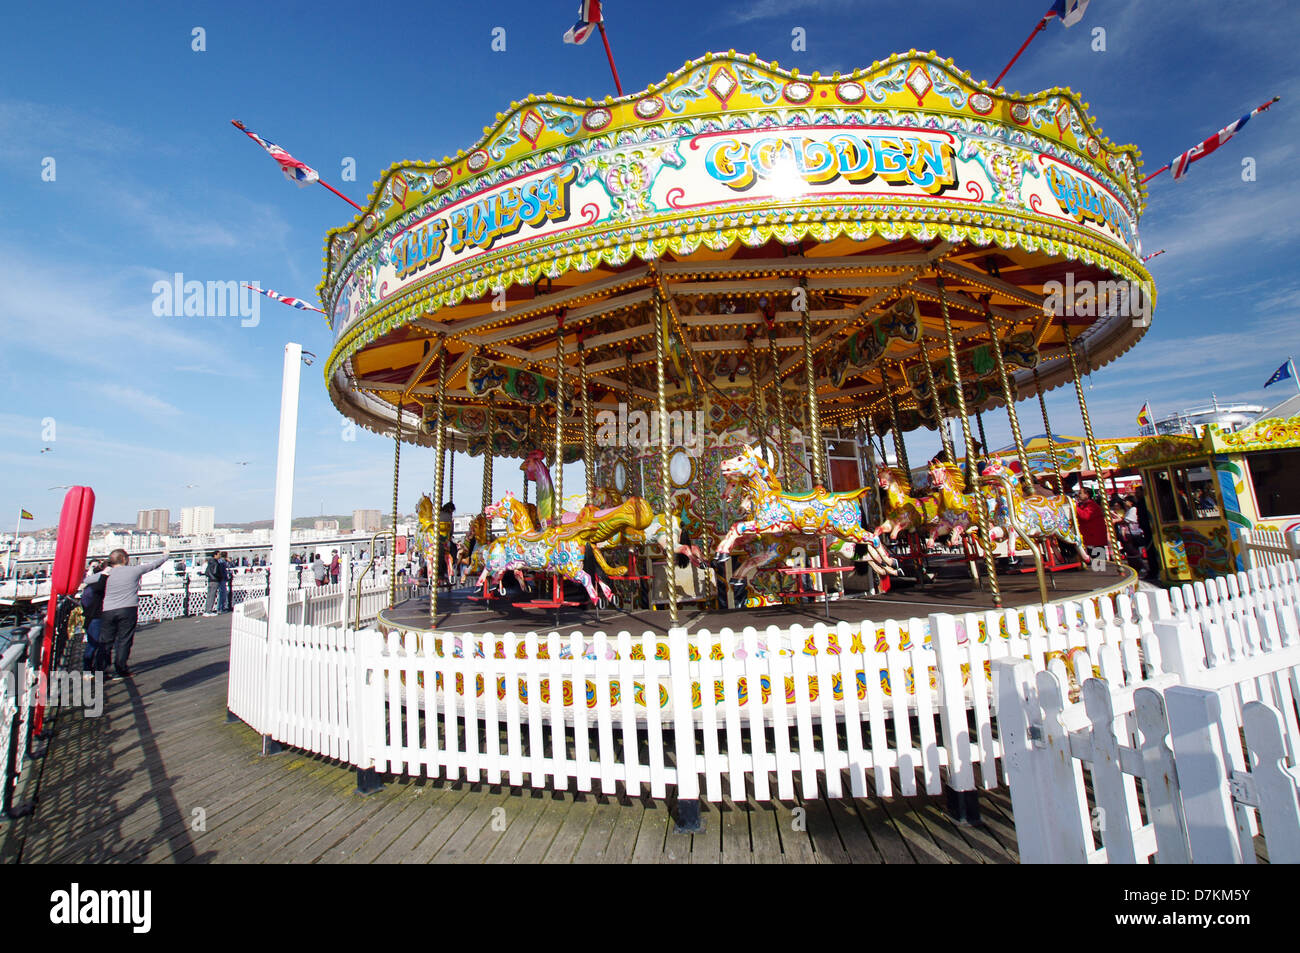 Karussell auf der Pier von Brighton - Brighton, England Stockfoto